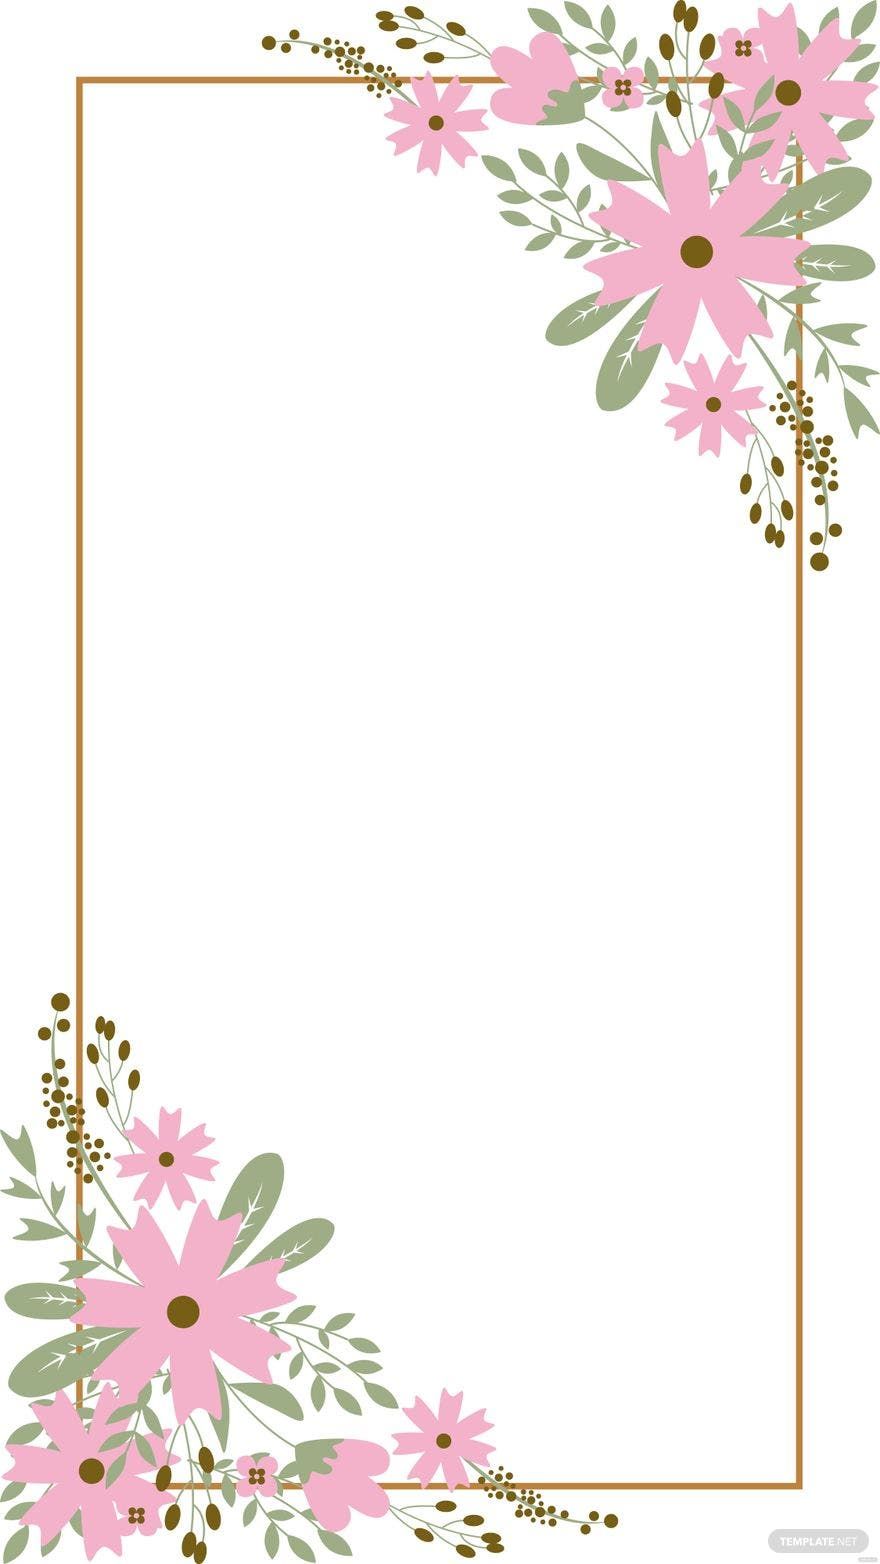 Free Wedding Floral Background Vector - EPS, Illustrator, JPG, PNG, SVG |  